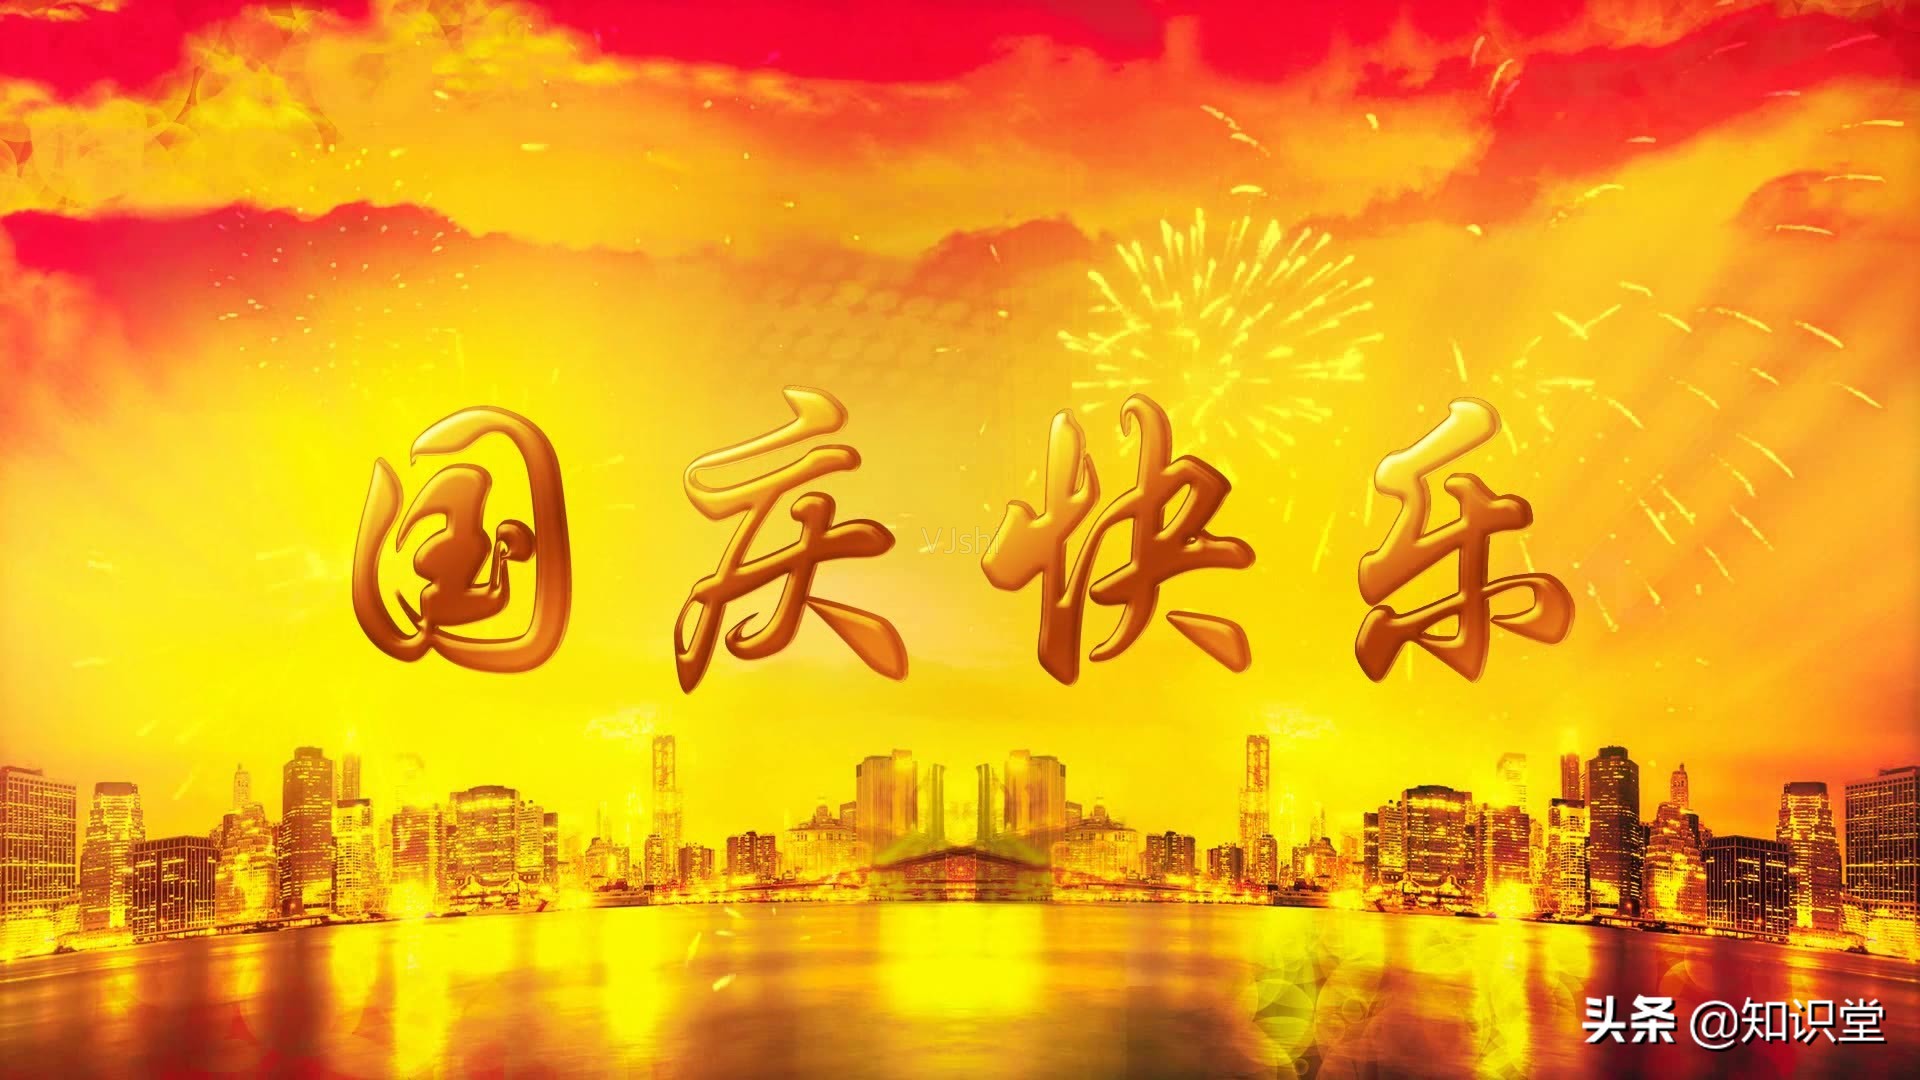 国庆节节日祝福文字手机壁纸,节日节气-靓丽图库